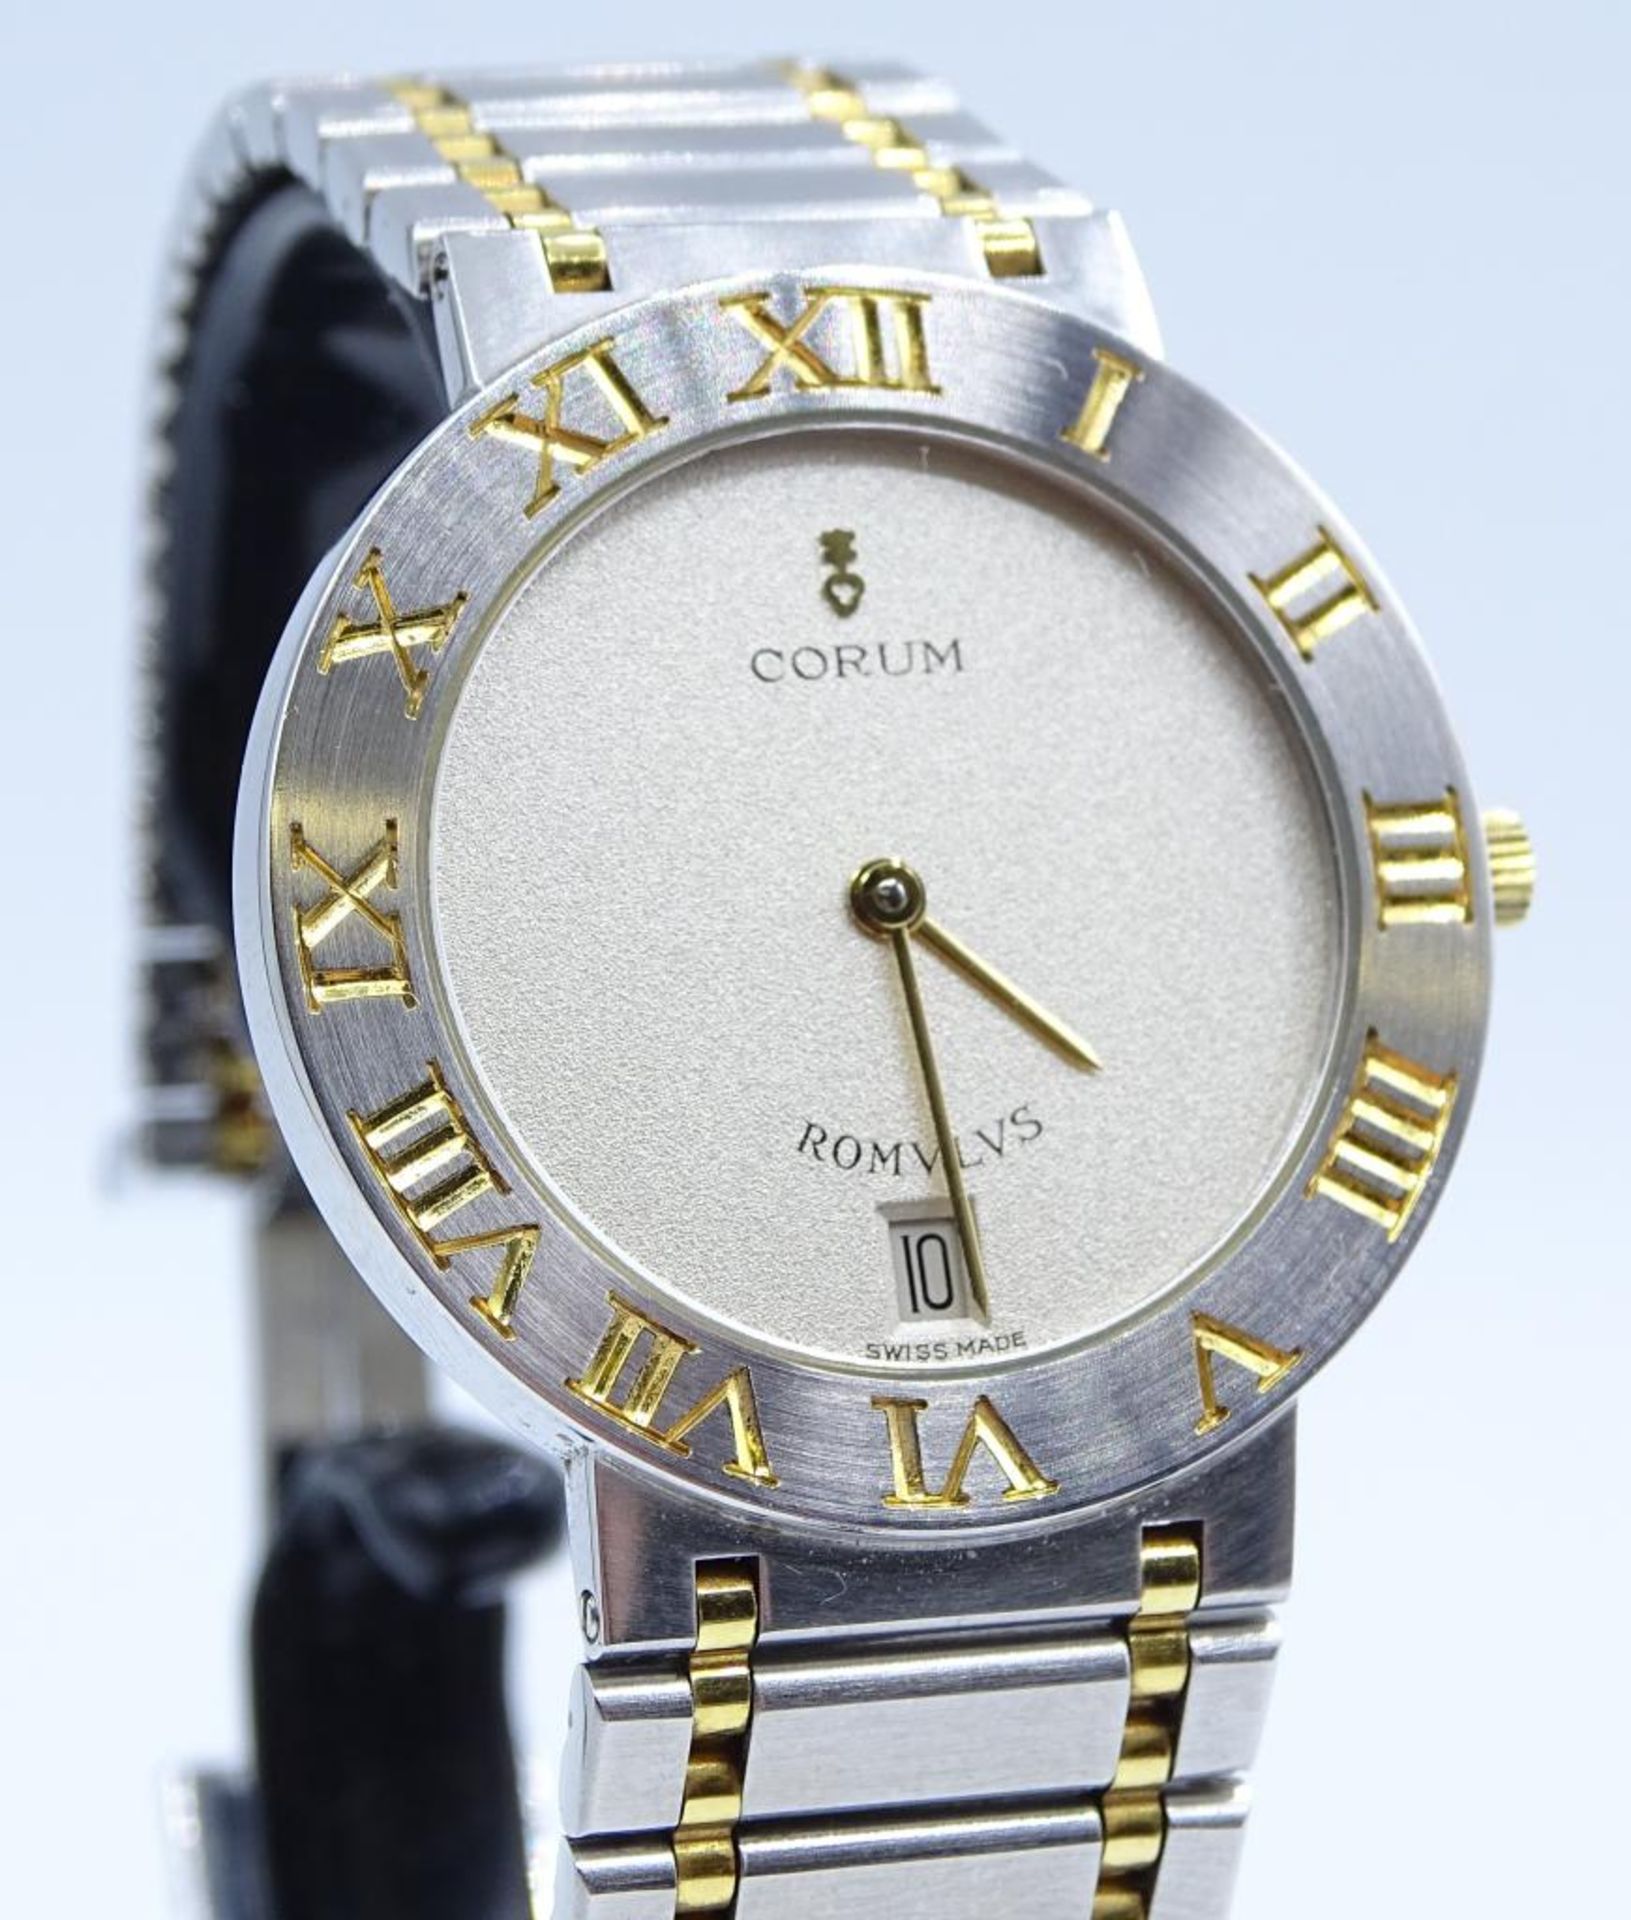 Armbanduhr "Corum - Romulus",Stahl/Gold,swiss made,Quartz, Ref.Nr.4390321 V048, 18K Gold,inkl.